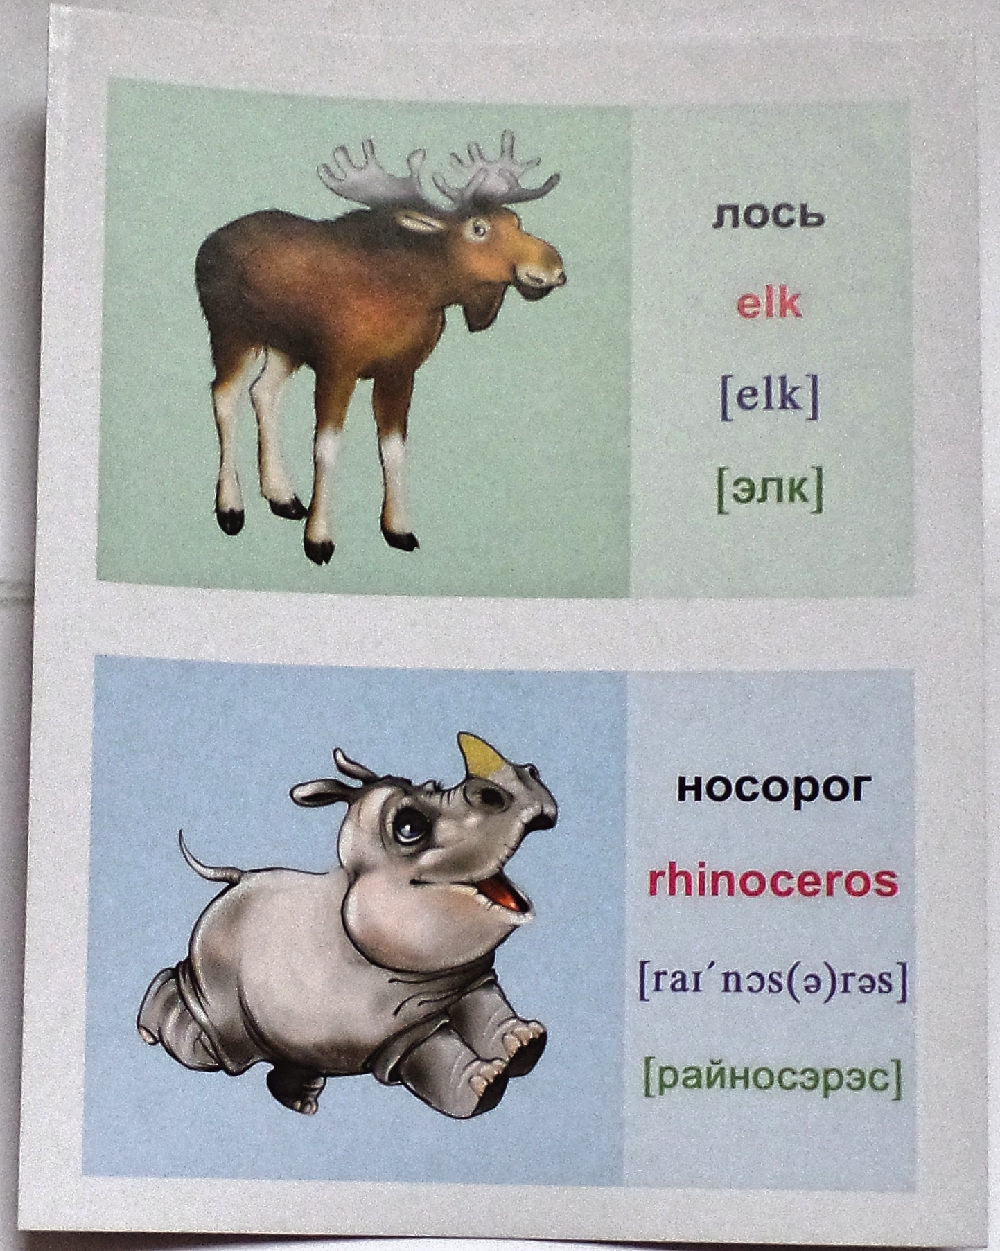 Лось прилагательное. Английский язык животные носорог. Карточка по английскому носорог. Карточки на английском животных с транскрипцией. Карточки с английскими словами для детей Бегемот.